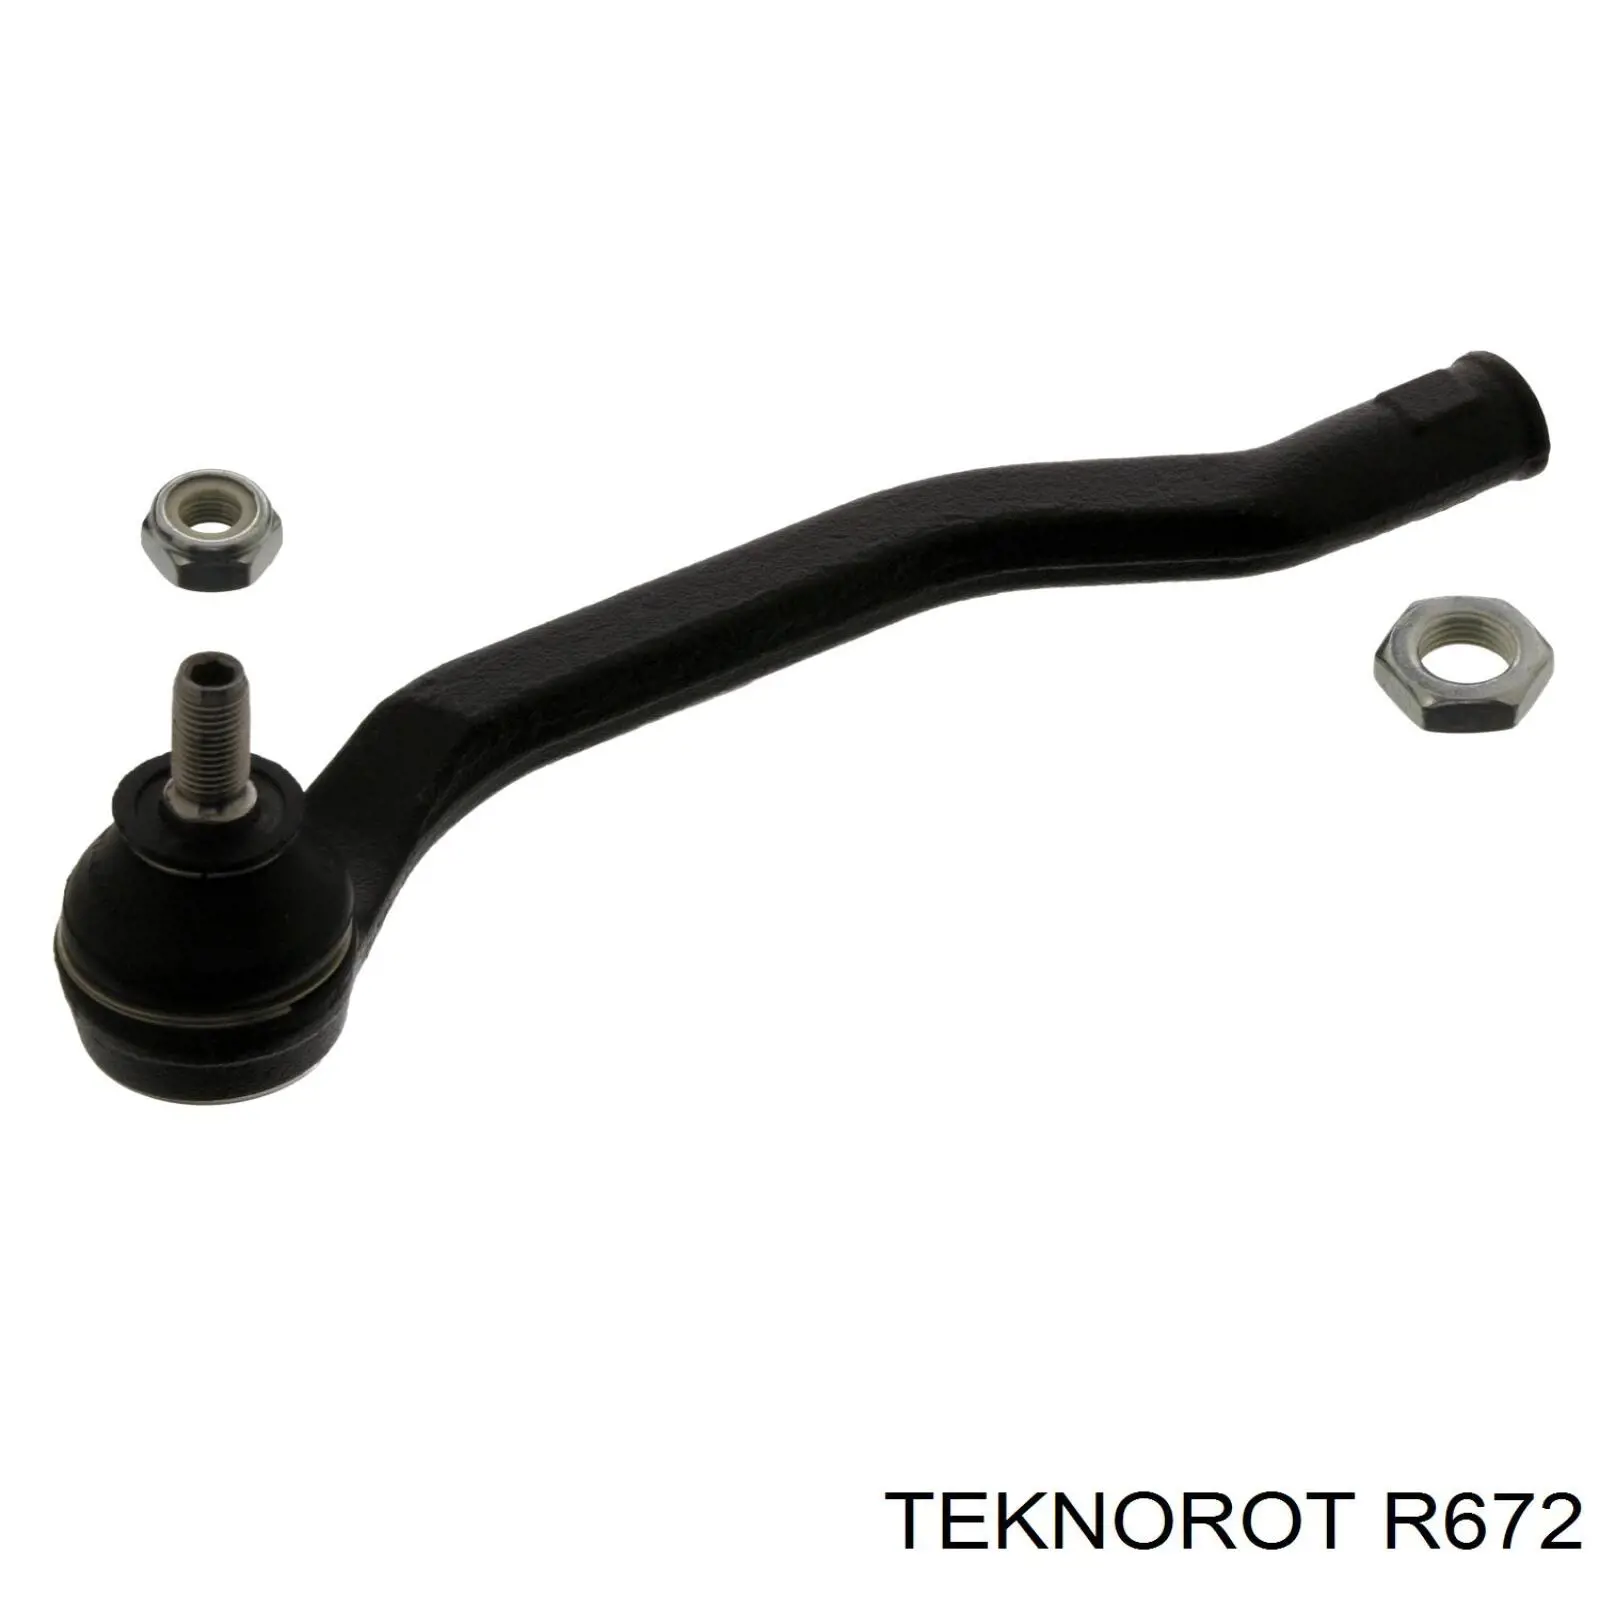 R672 Teknorot ponta externa da barra de direção